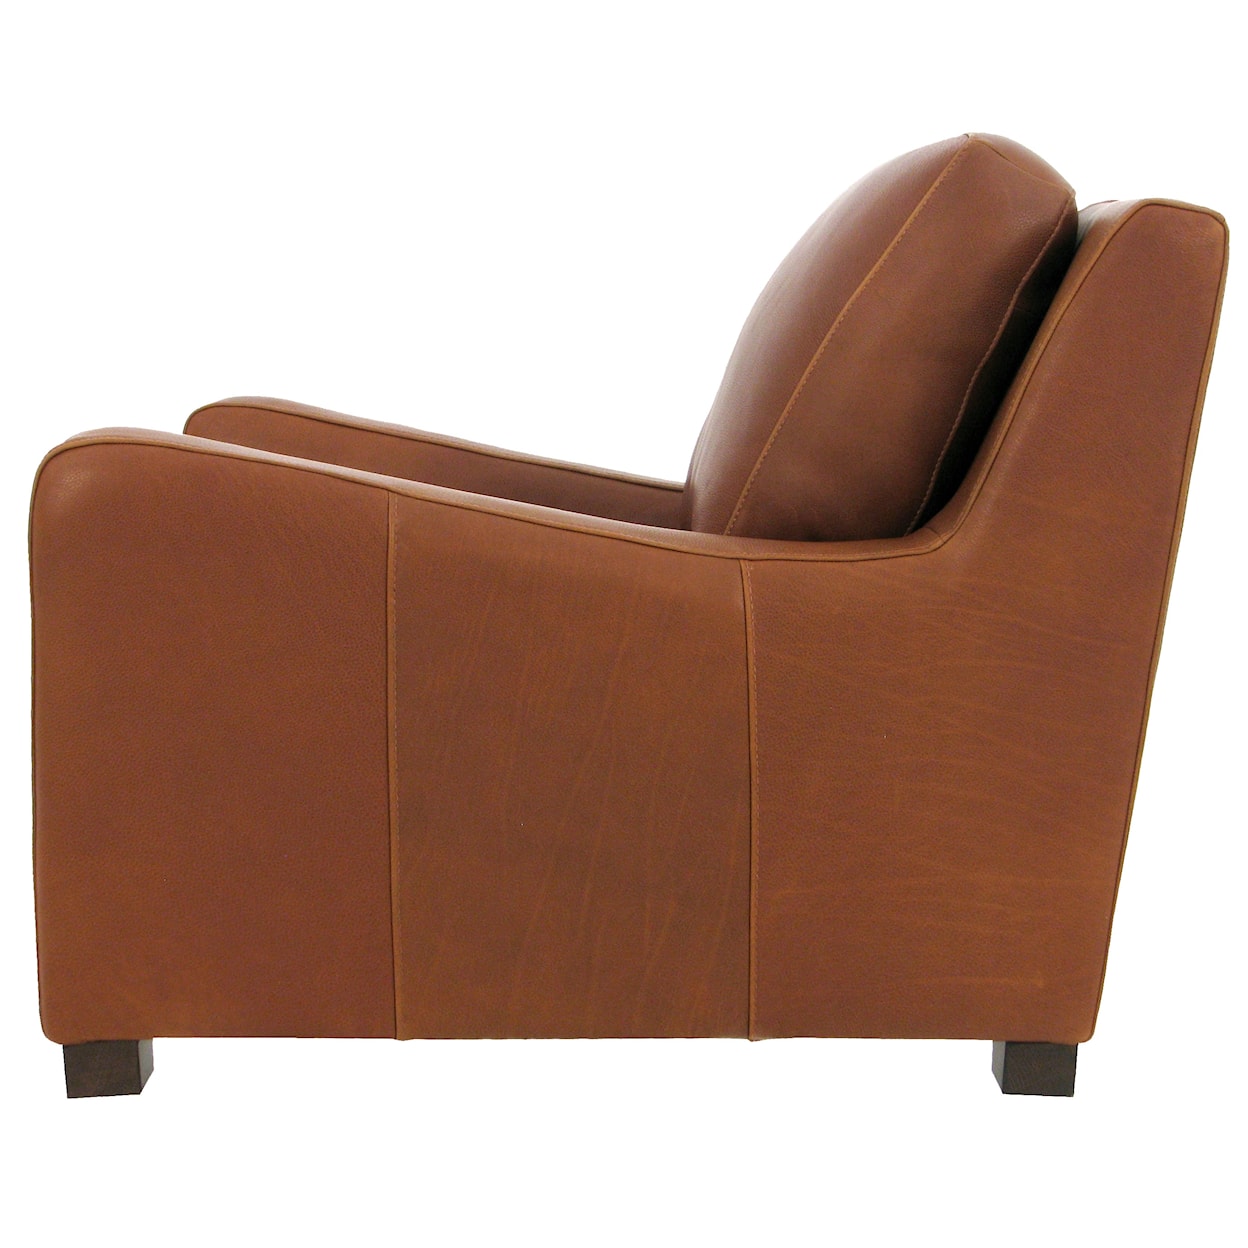 Virginia Furniture Market Premium Leather 7740 Chair